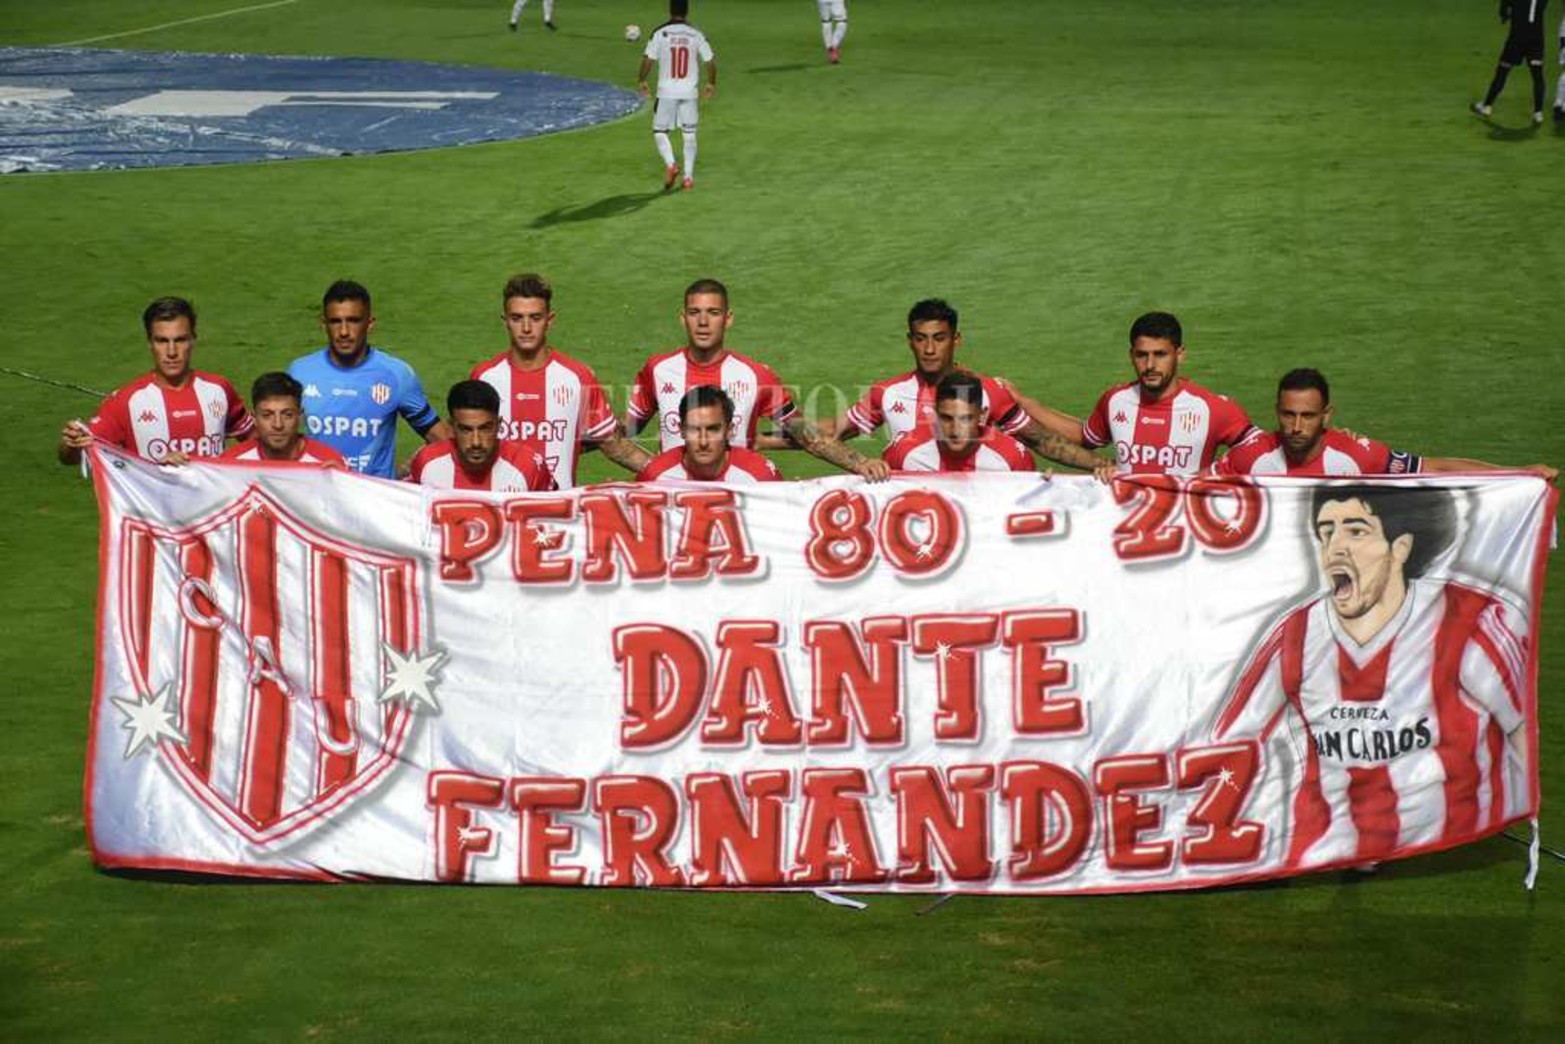 Unión posó con la bandera de Dante Fernández